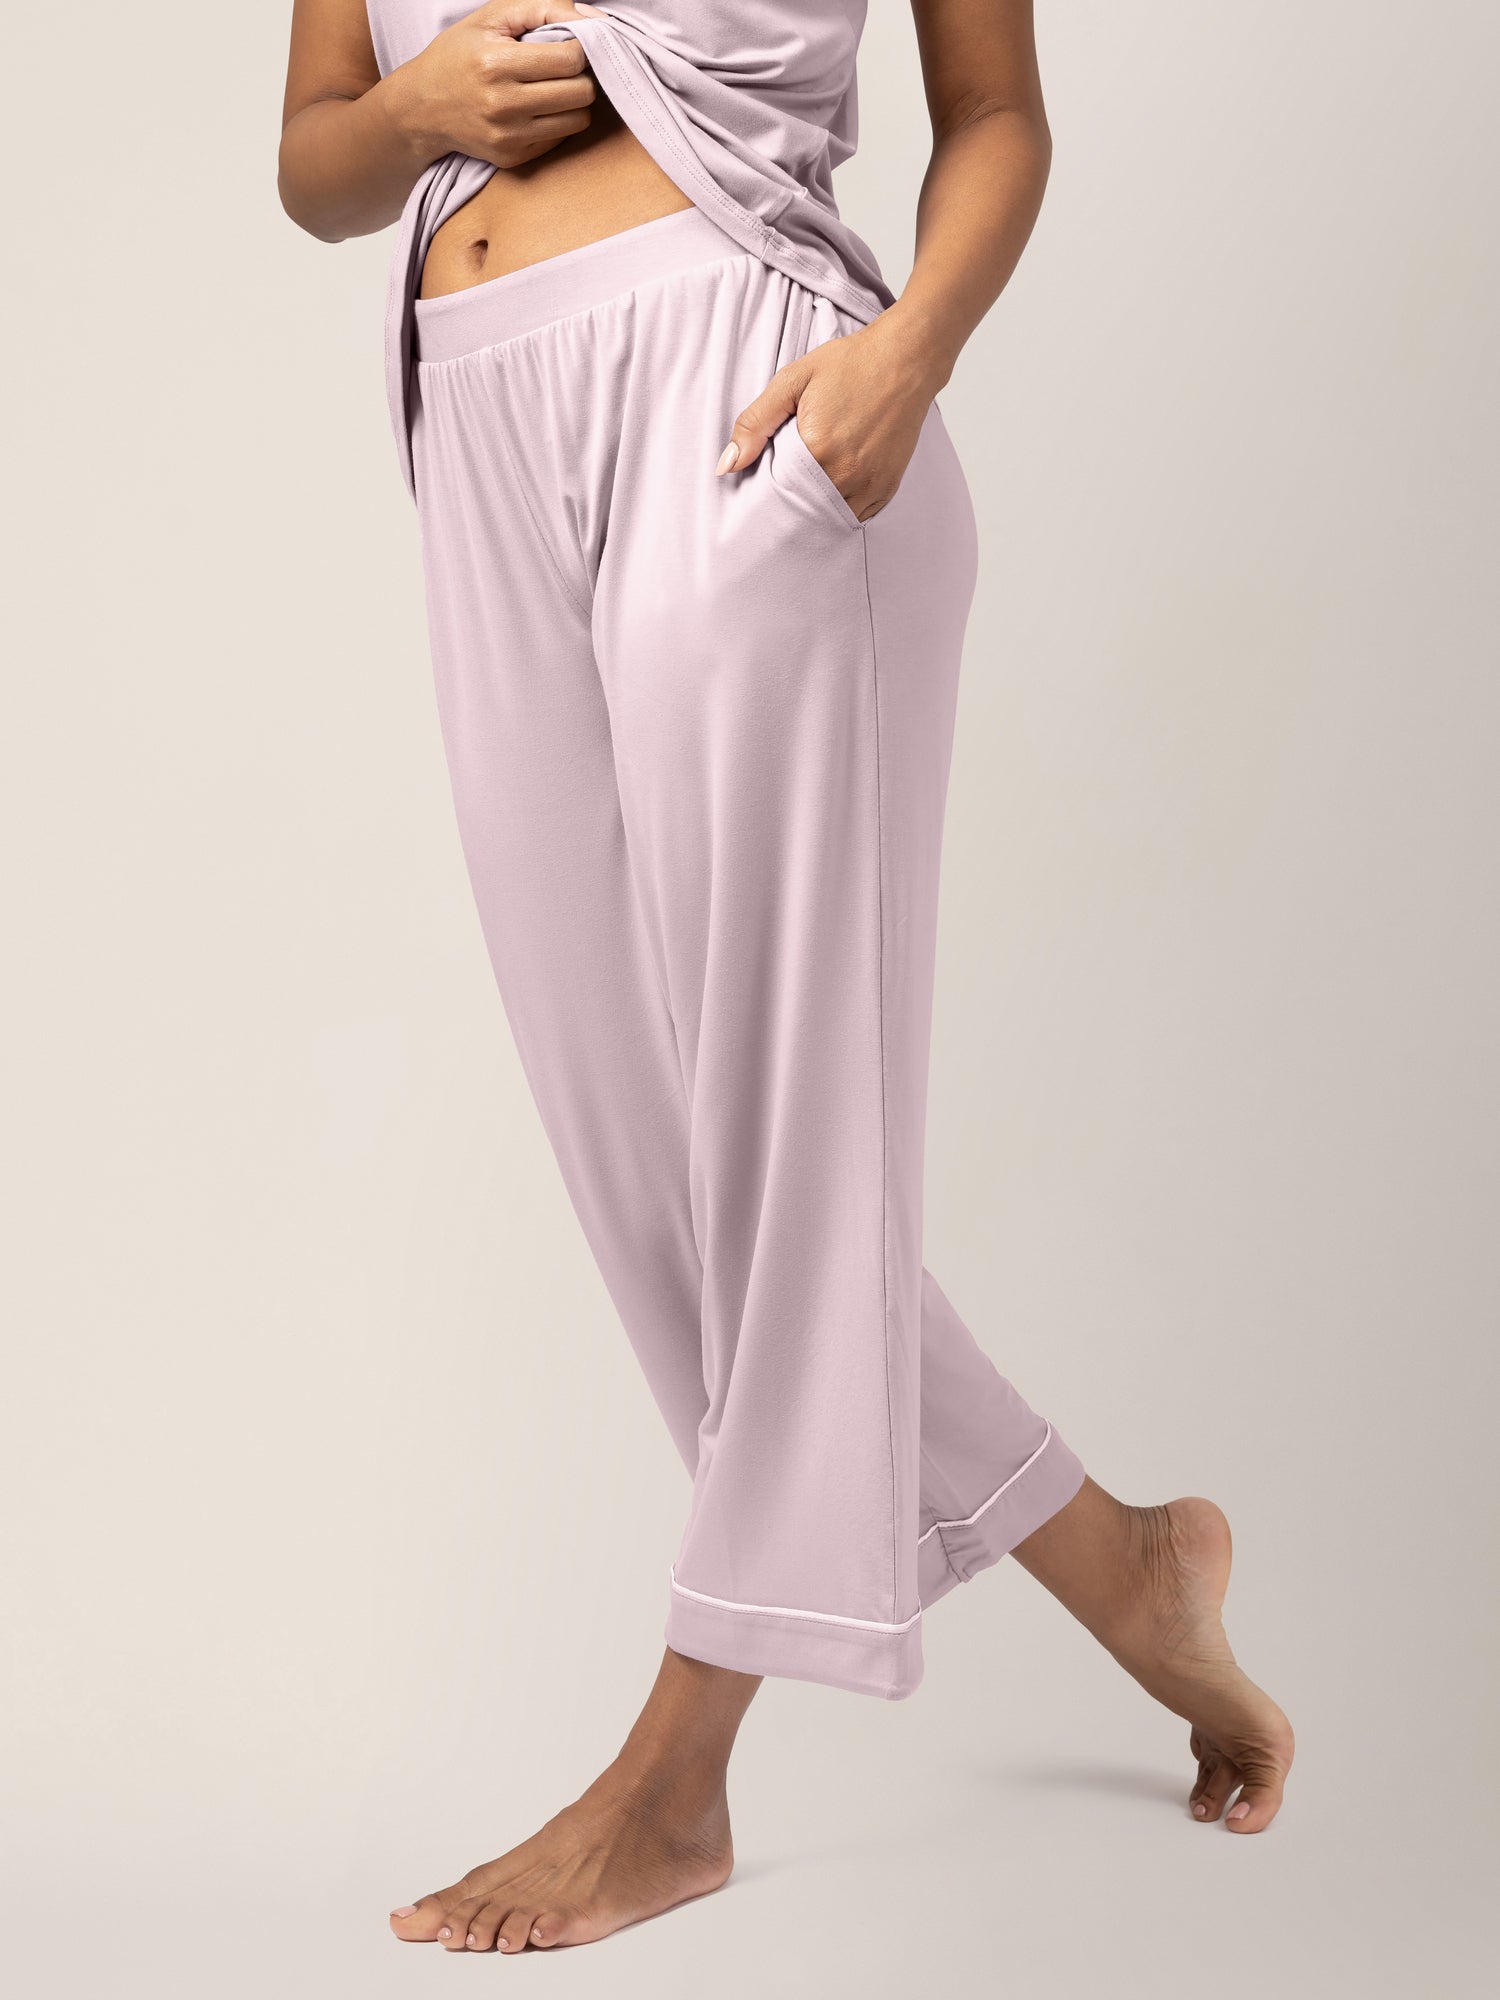 Pyjama Top With Built in Bra Sleepwear Loungewear Set With Shelf